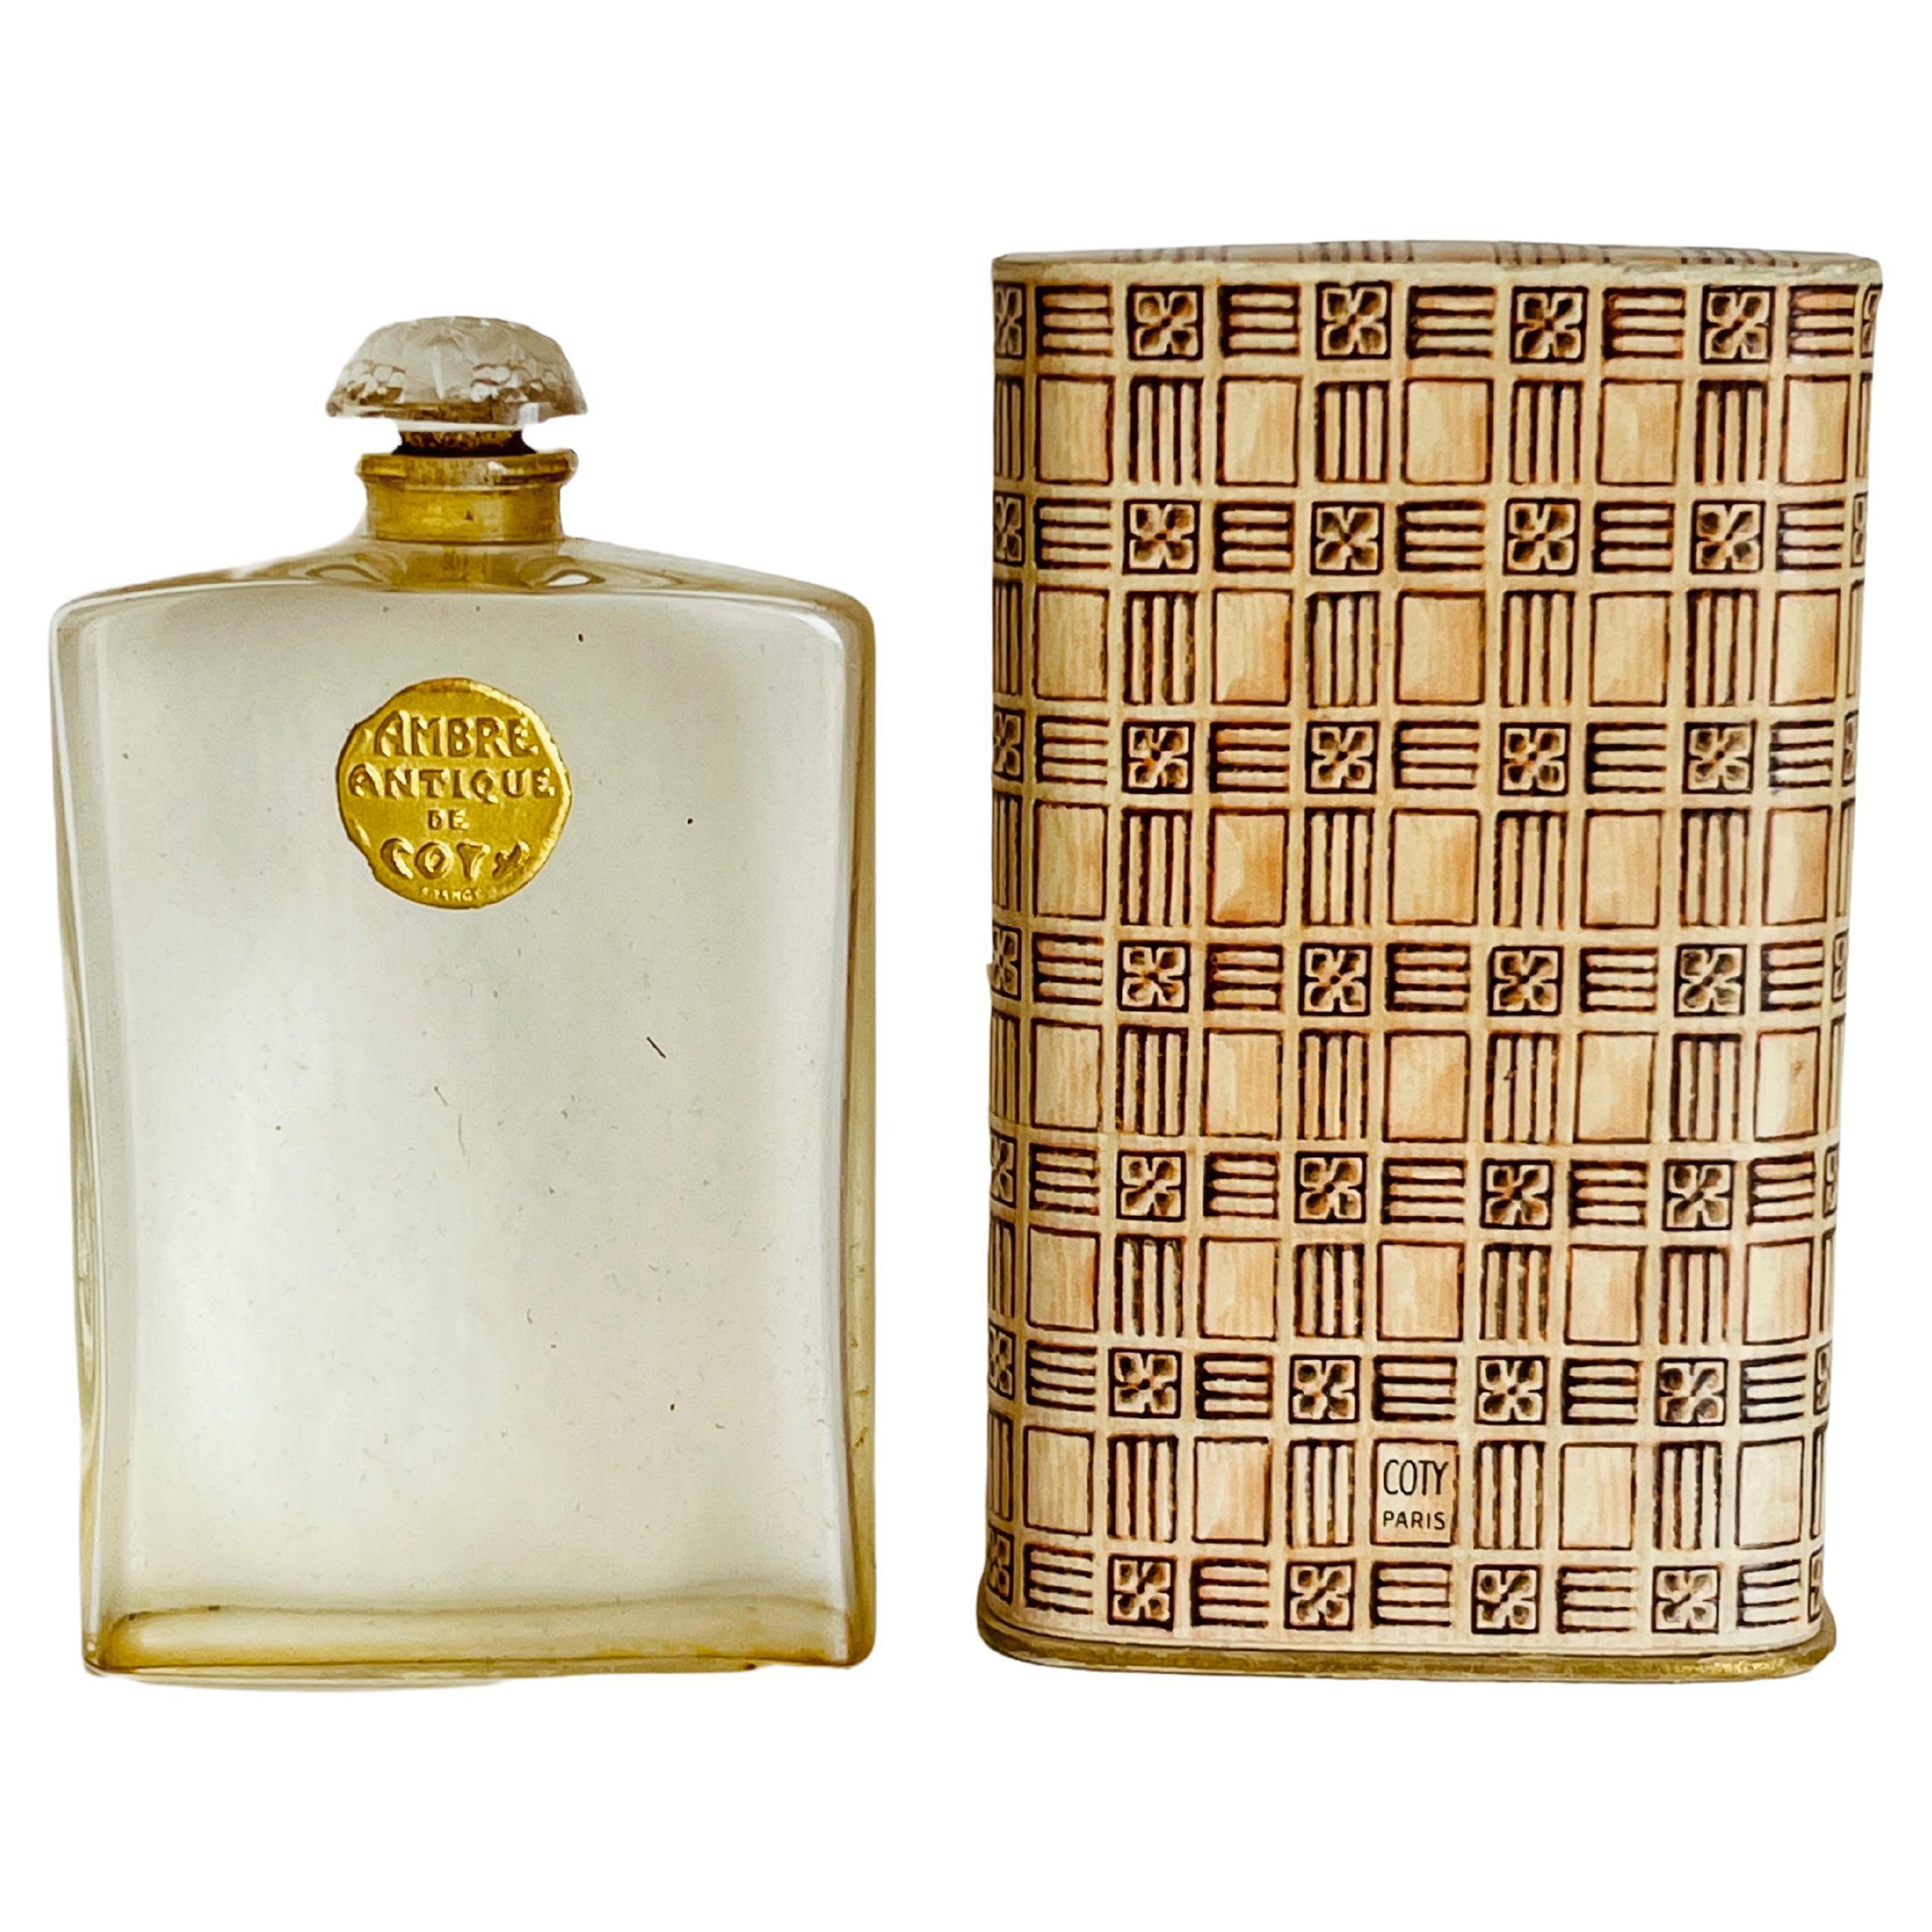 1920s Lalique French Perfume Bottle Ambre Antique De Coty